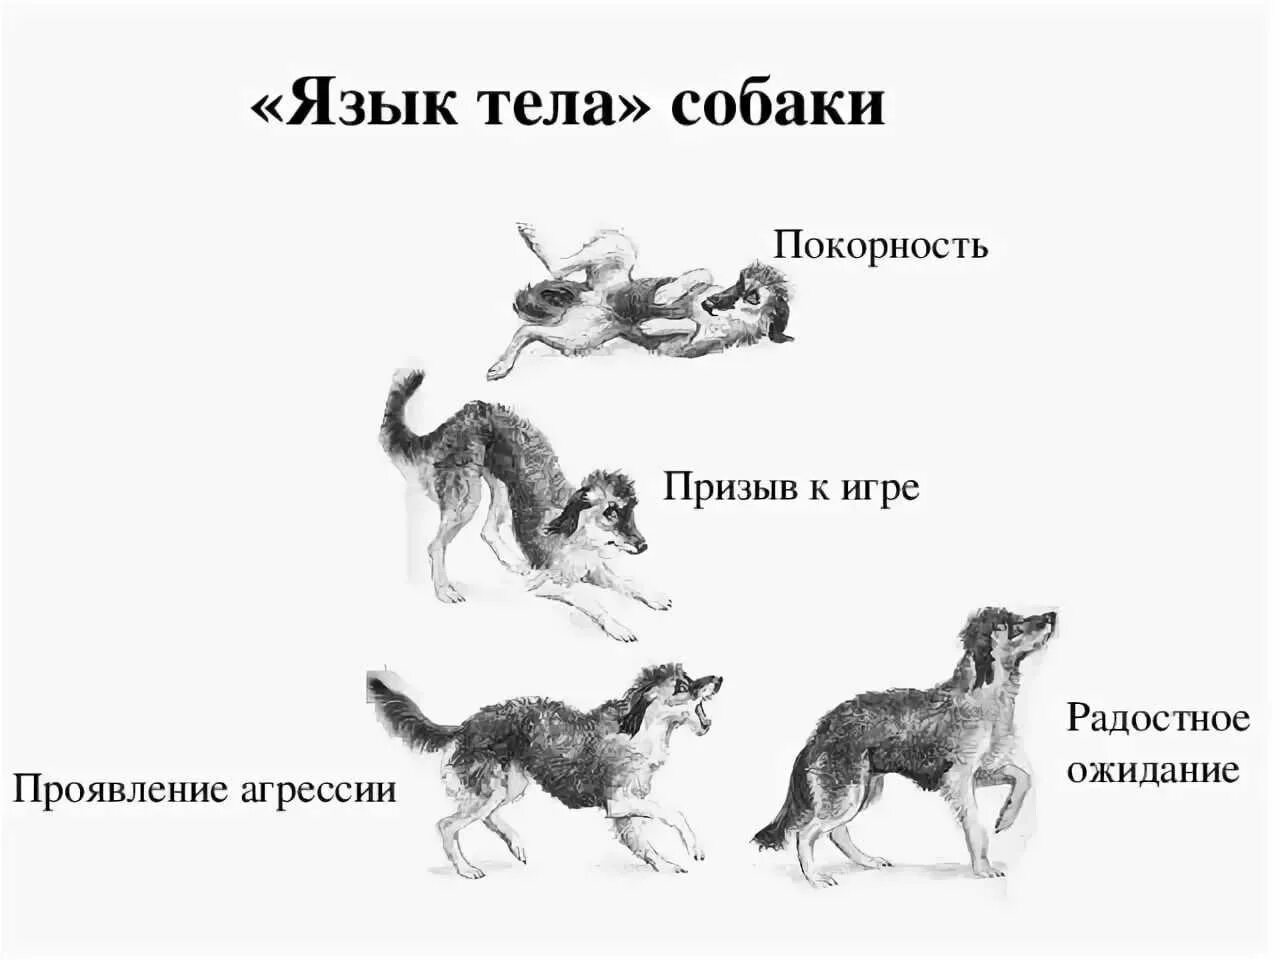 Почему собака чувствует. Поведение собак. Язык тела собаки в картинках. Араедение собак. Виды поведения собак.